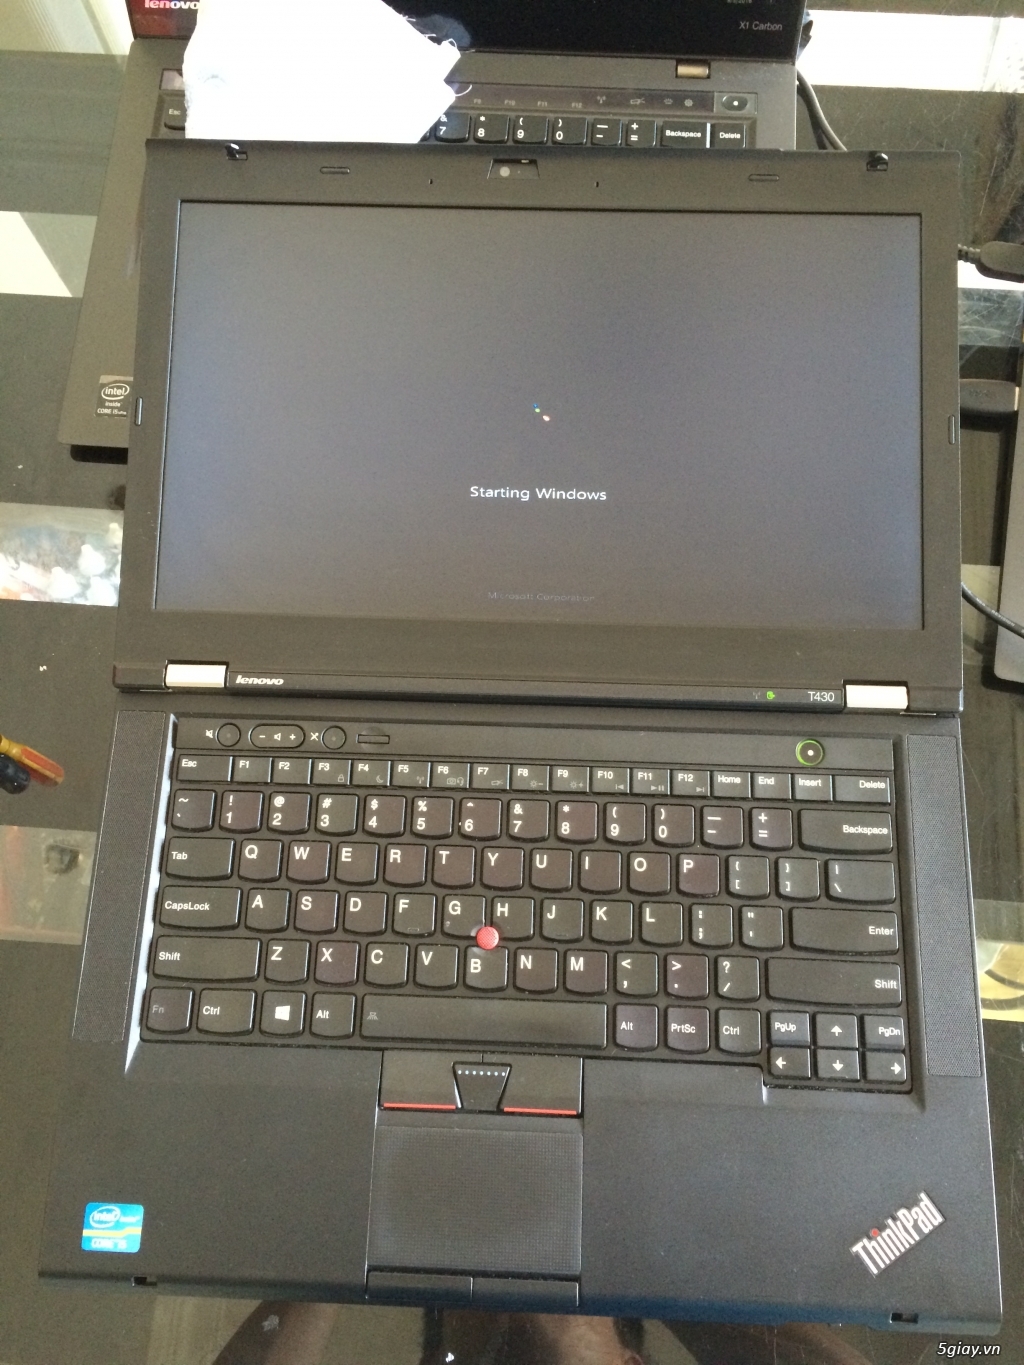 ThinkPad T430 Like New i5 3320M Ram 4G HDD 320G, siêu bền đẹp - 4